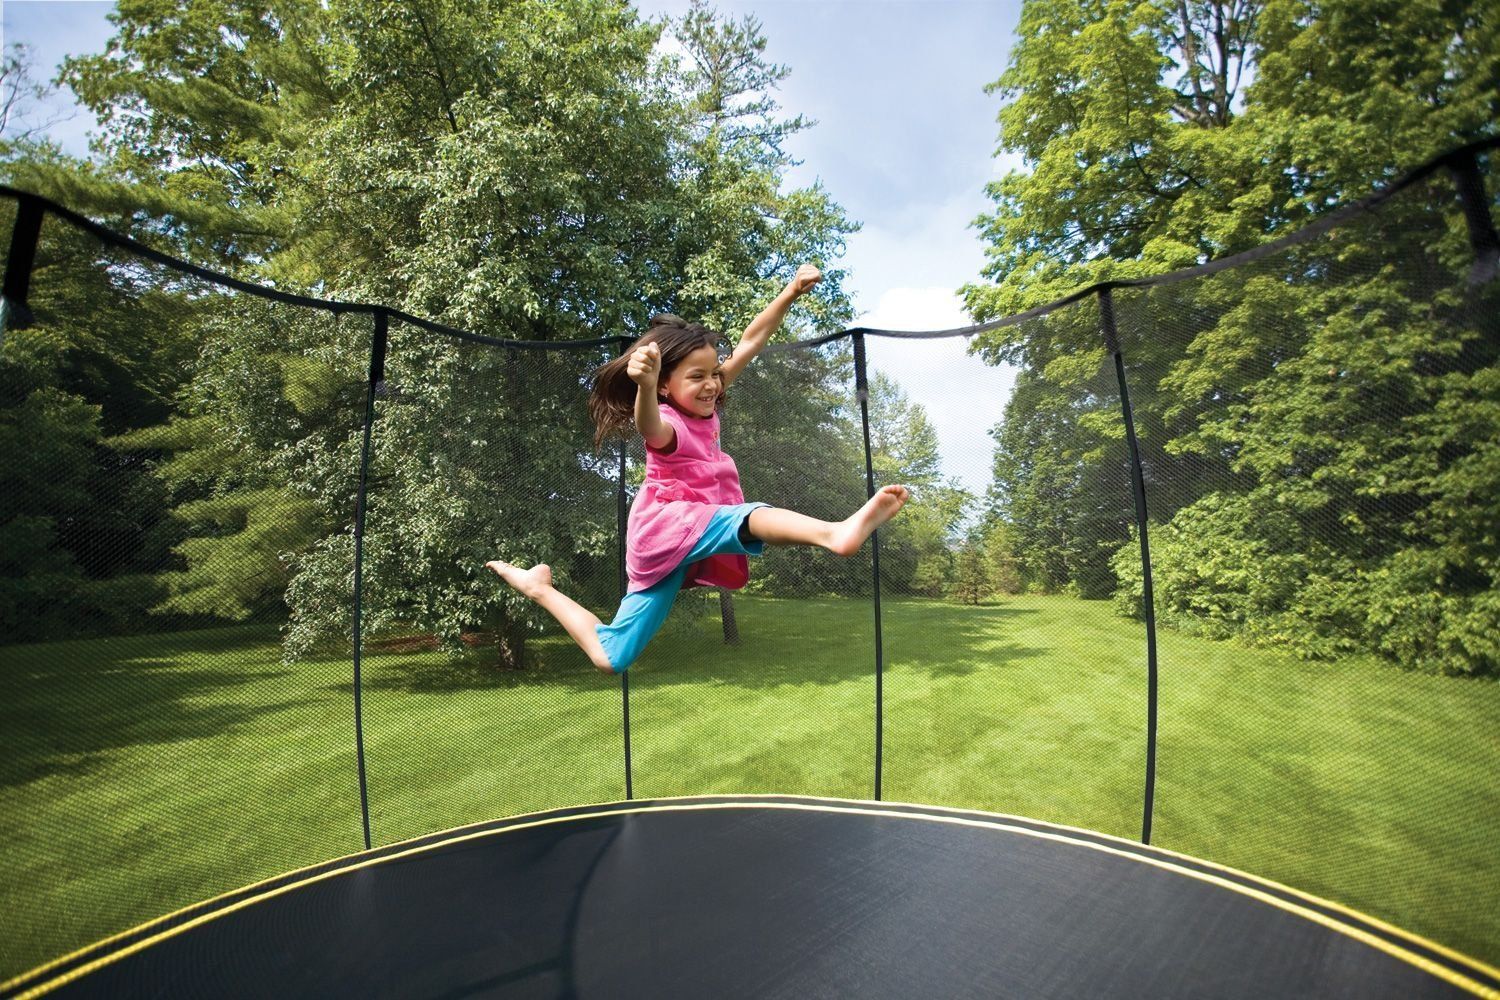 Parhaat trampoliinit lapsille ja aikuisille vuonna 2020